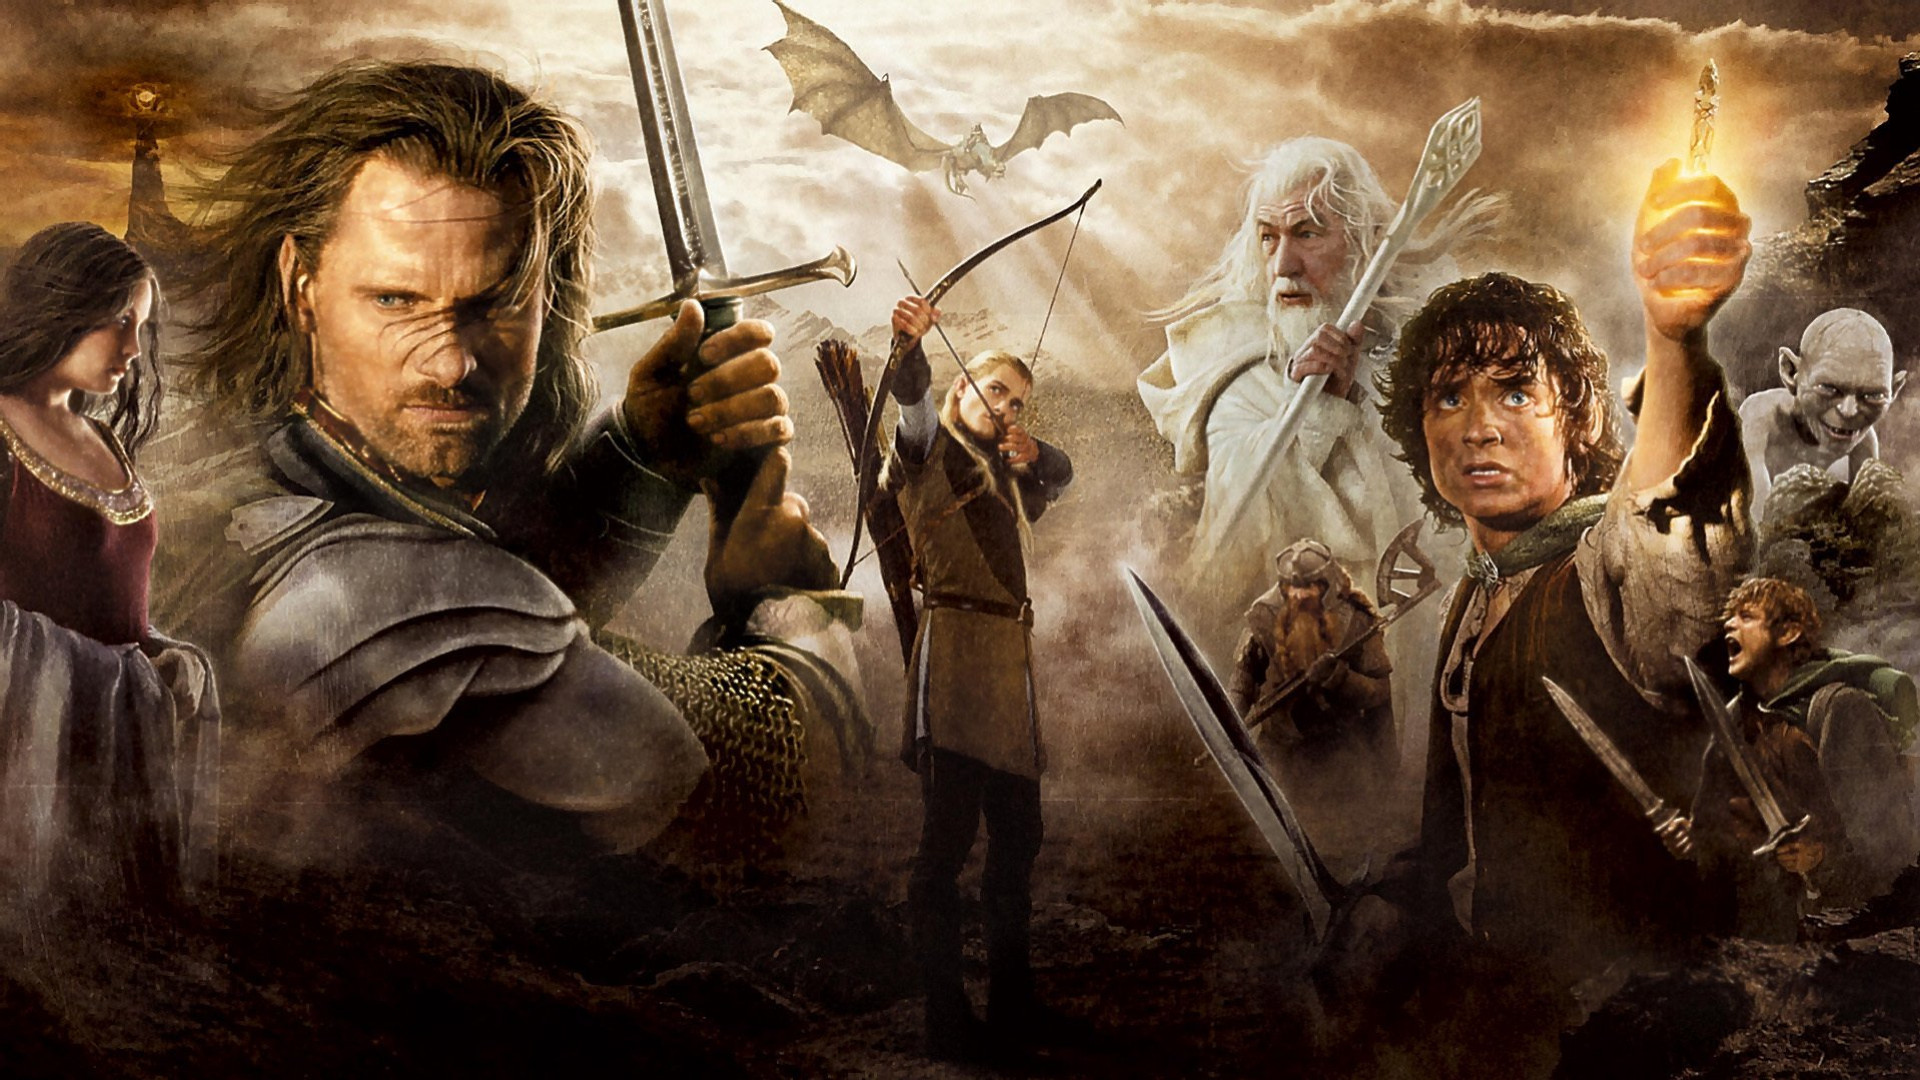 Wallpaper of Aragorn  rlotr